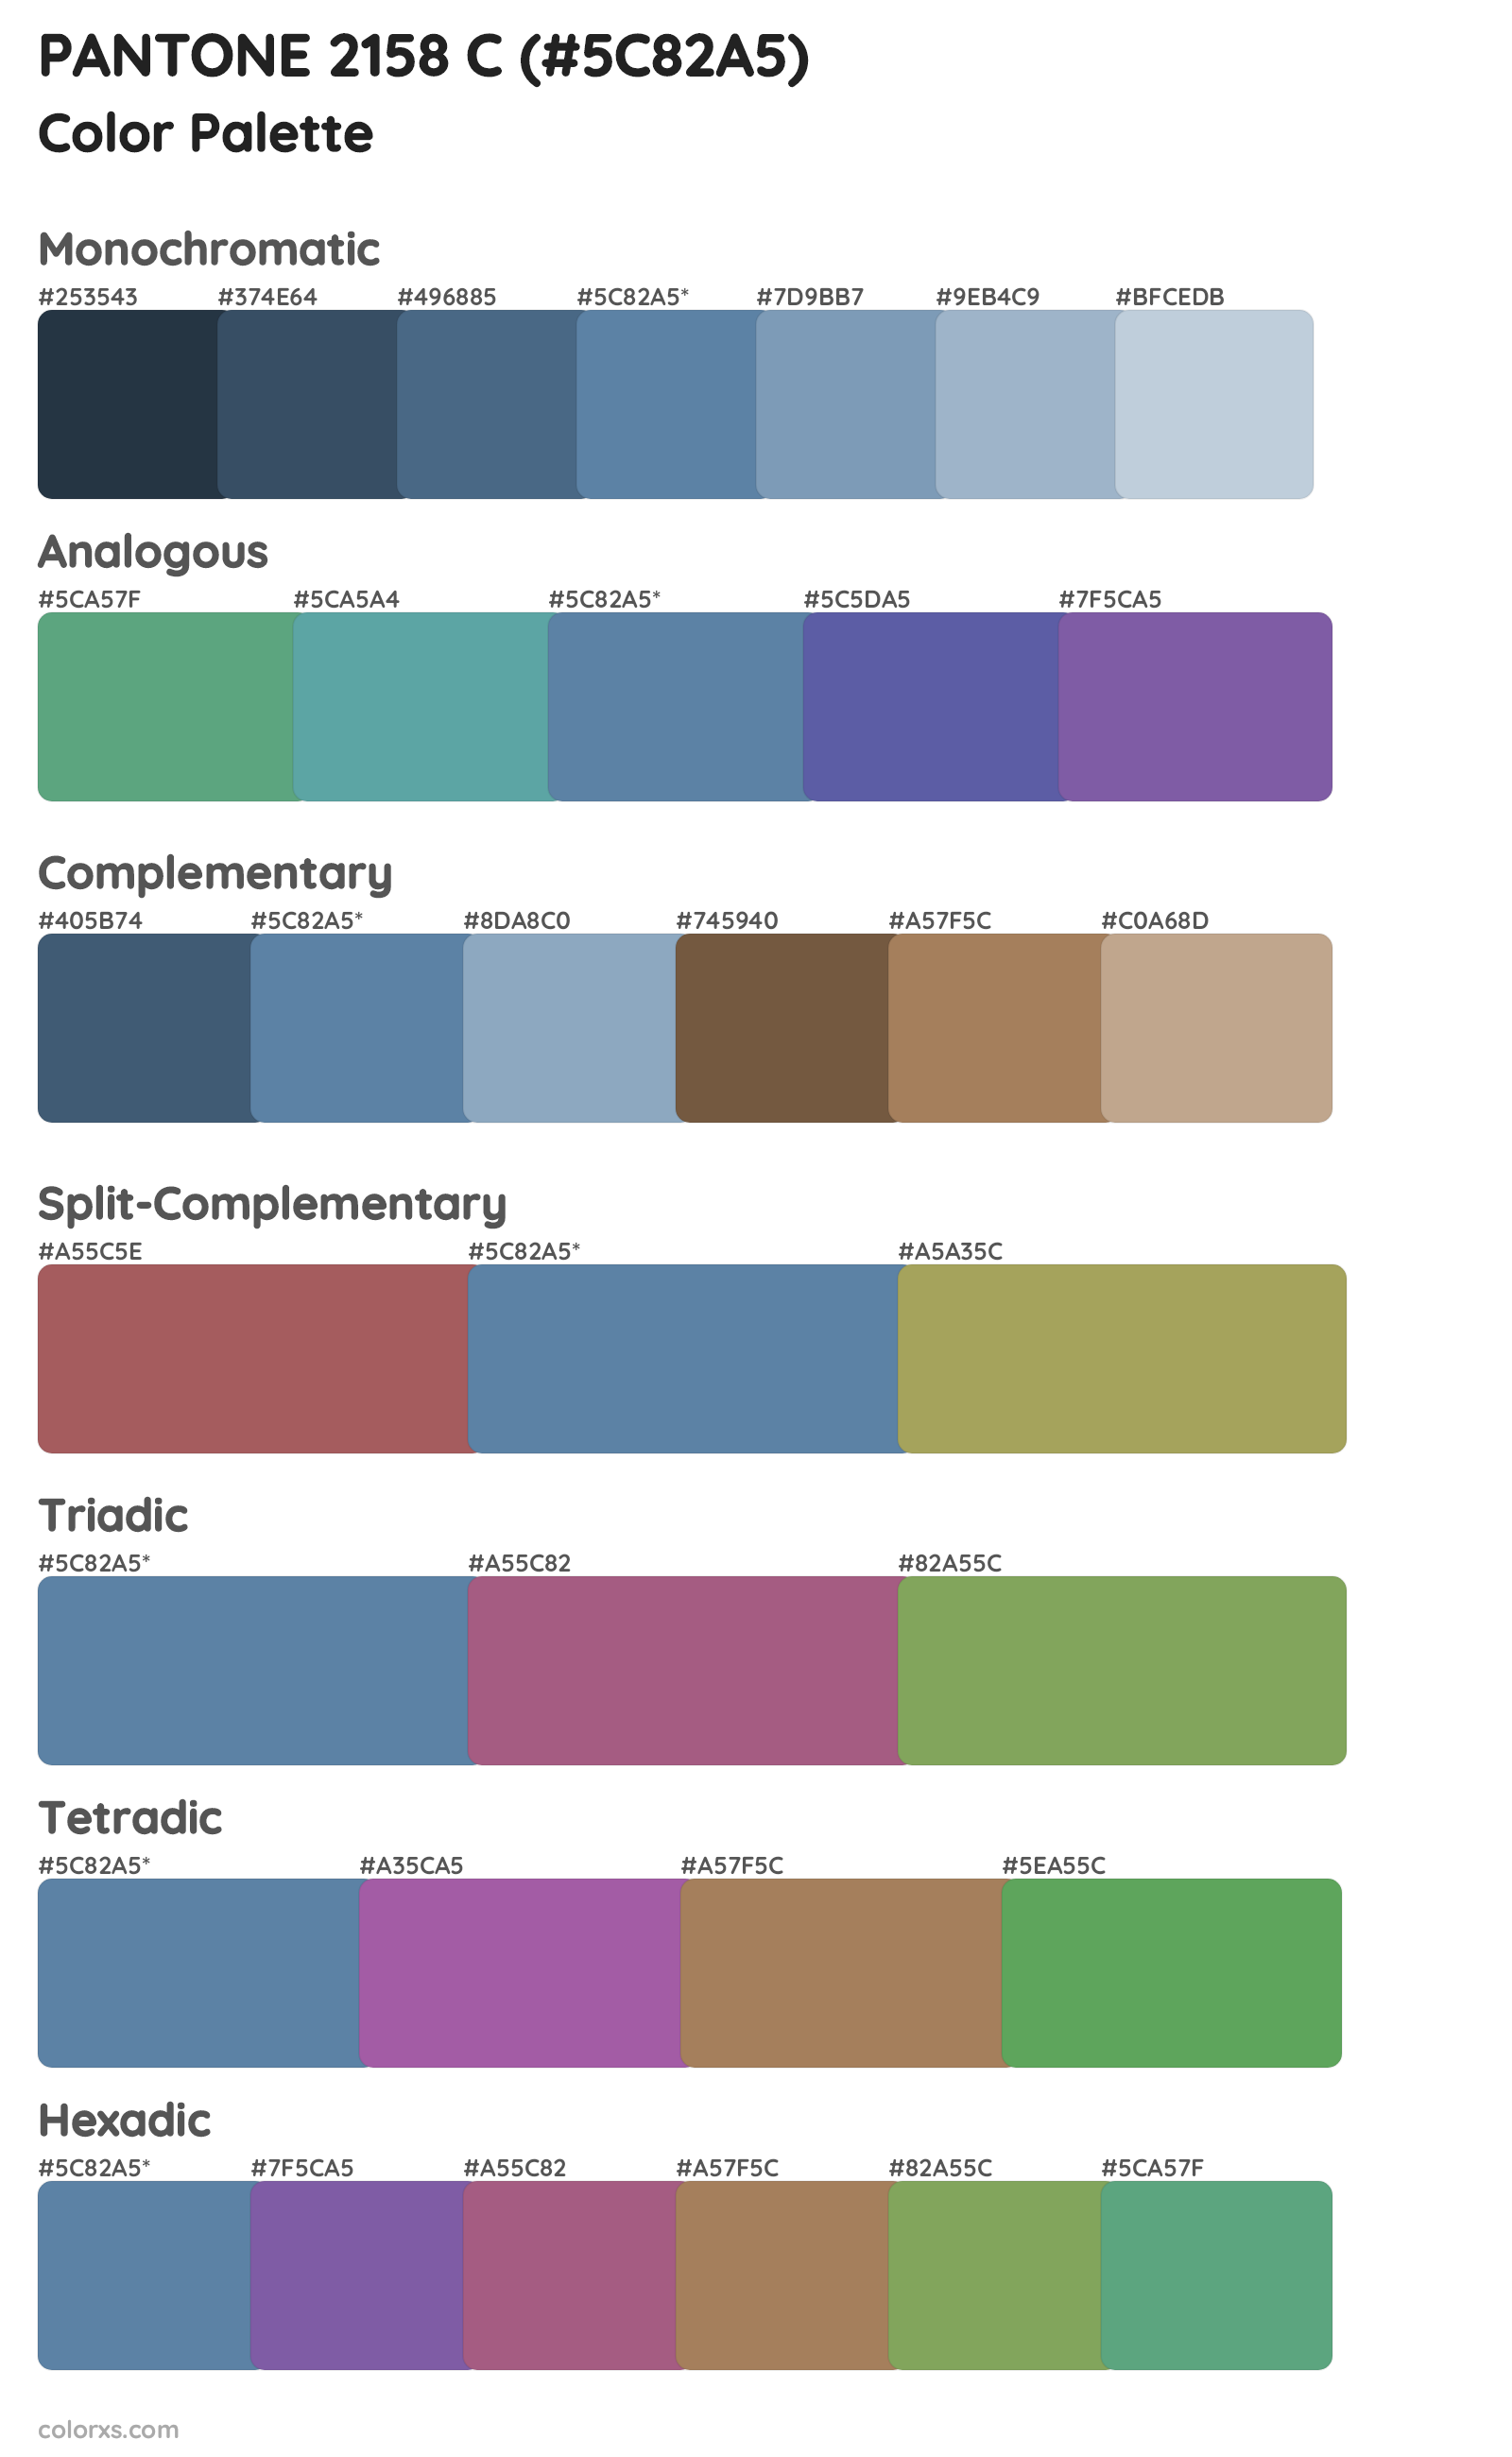 PANTONE 2158 C Color Scheme Palettes